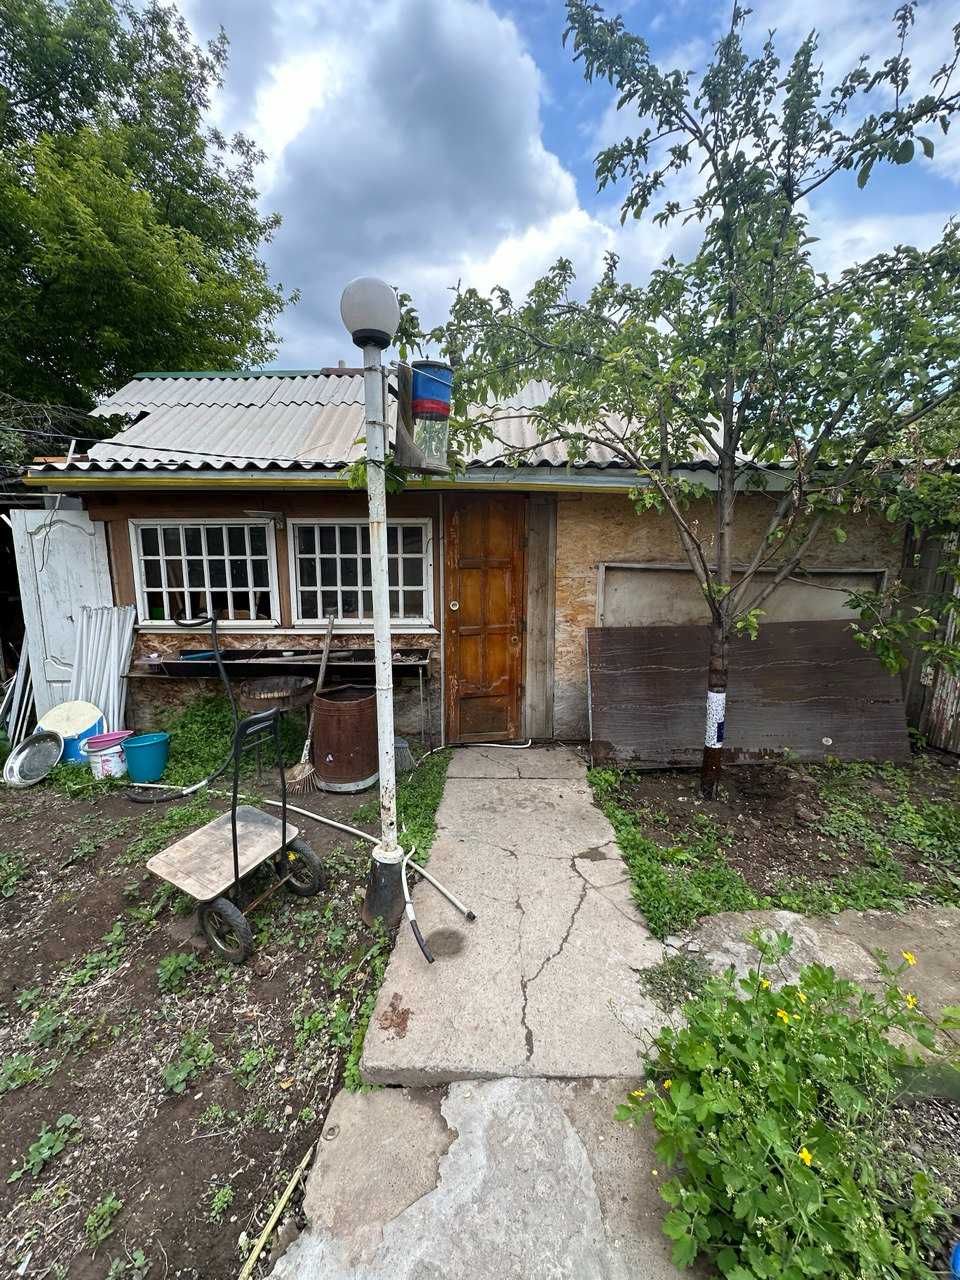 Продаётся 4-комн дом в районе Кирова. Цена: 28 млн